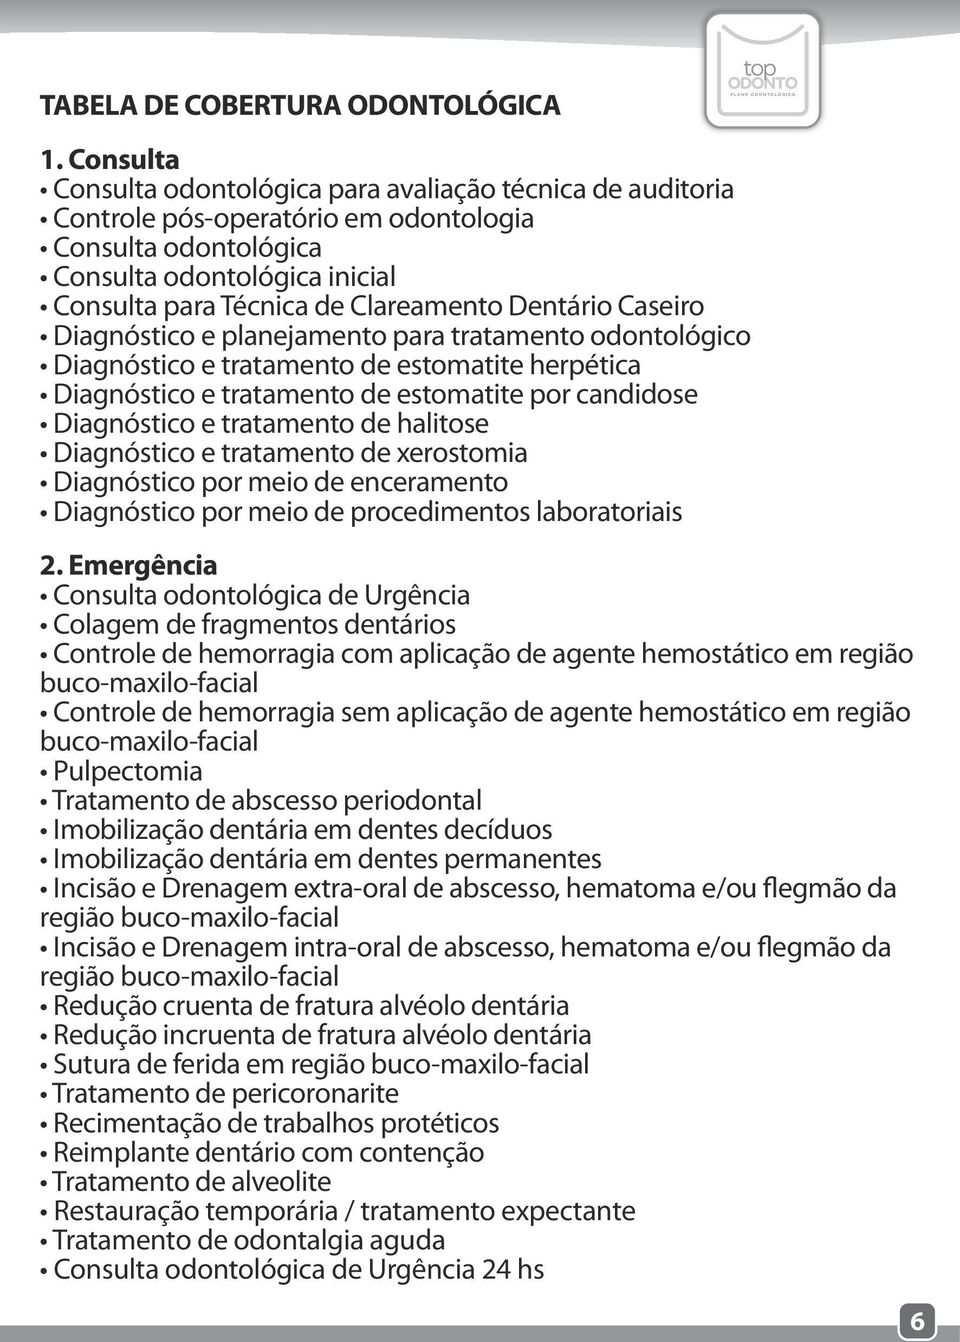 Dentário Caseiro Diagnóstico e planejamento para tratamento odontológico Diagnóstico e tratamento de estomatite herpética Diagnóstico e tratamento de estomatite por candidose Diagnóstico e tratamento